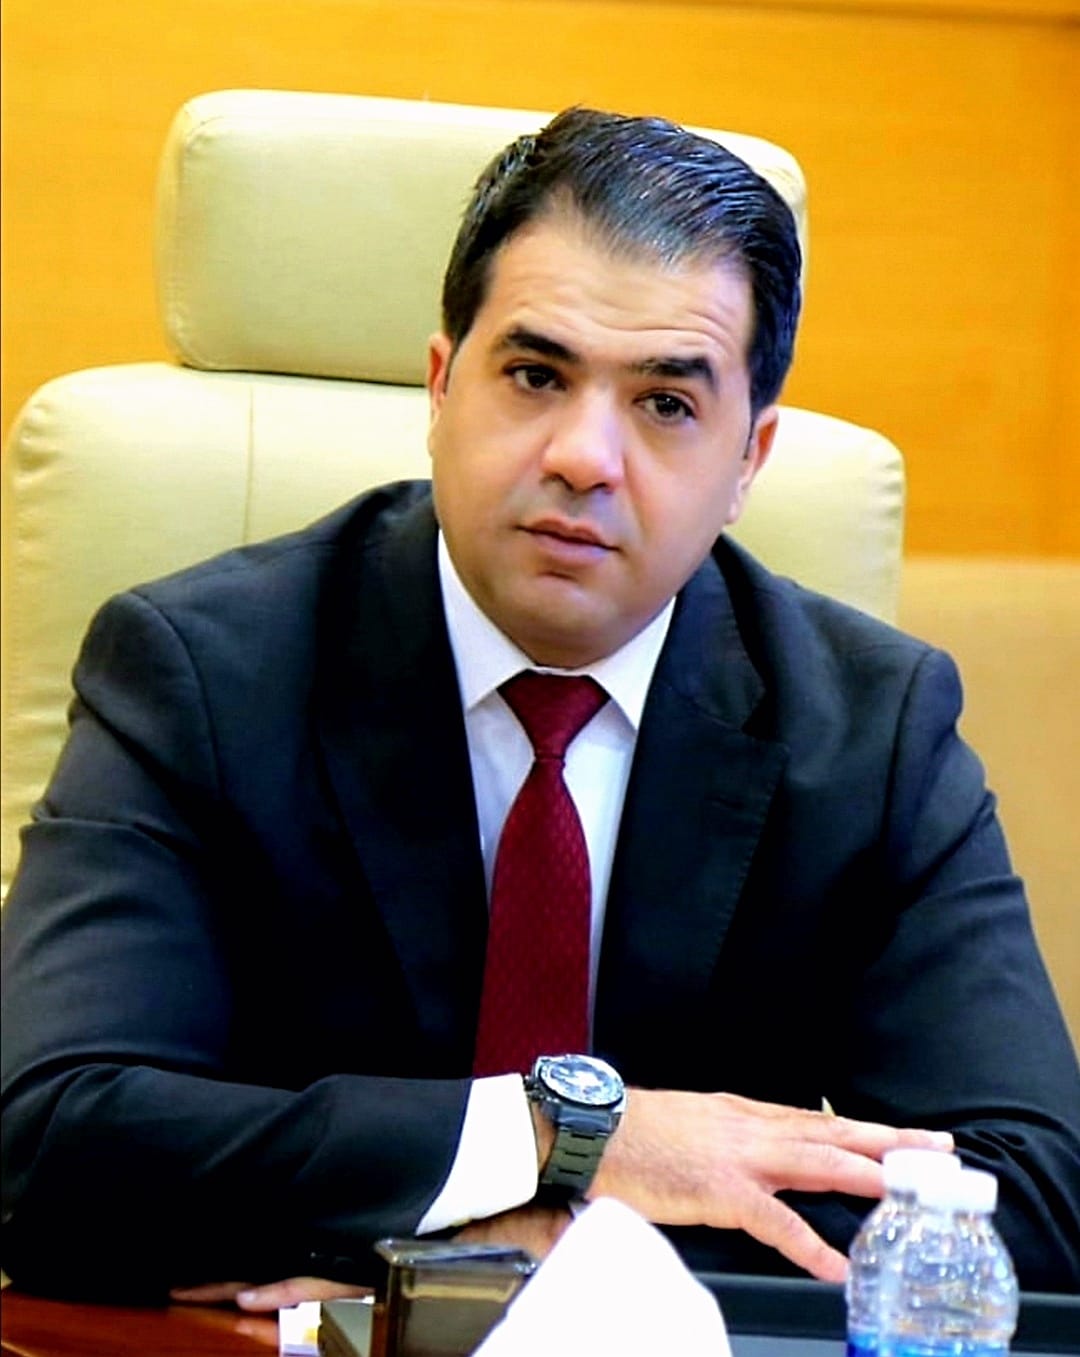 إرادة ملكية بتعيين م. احمد العبداللات عضوا بمجلس أمناء آل البيت